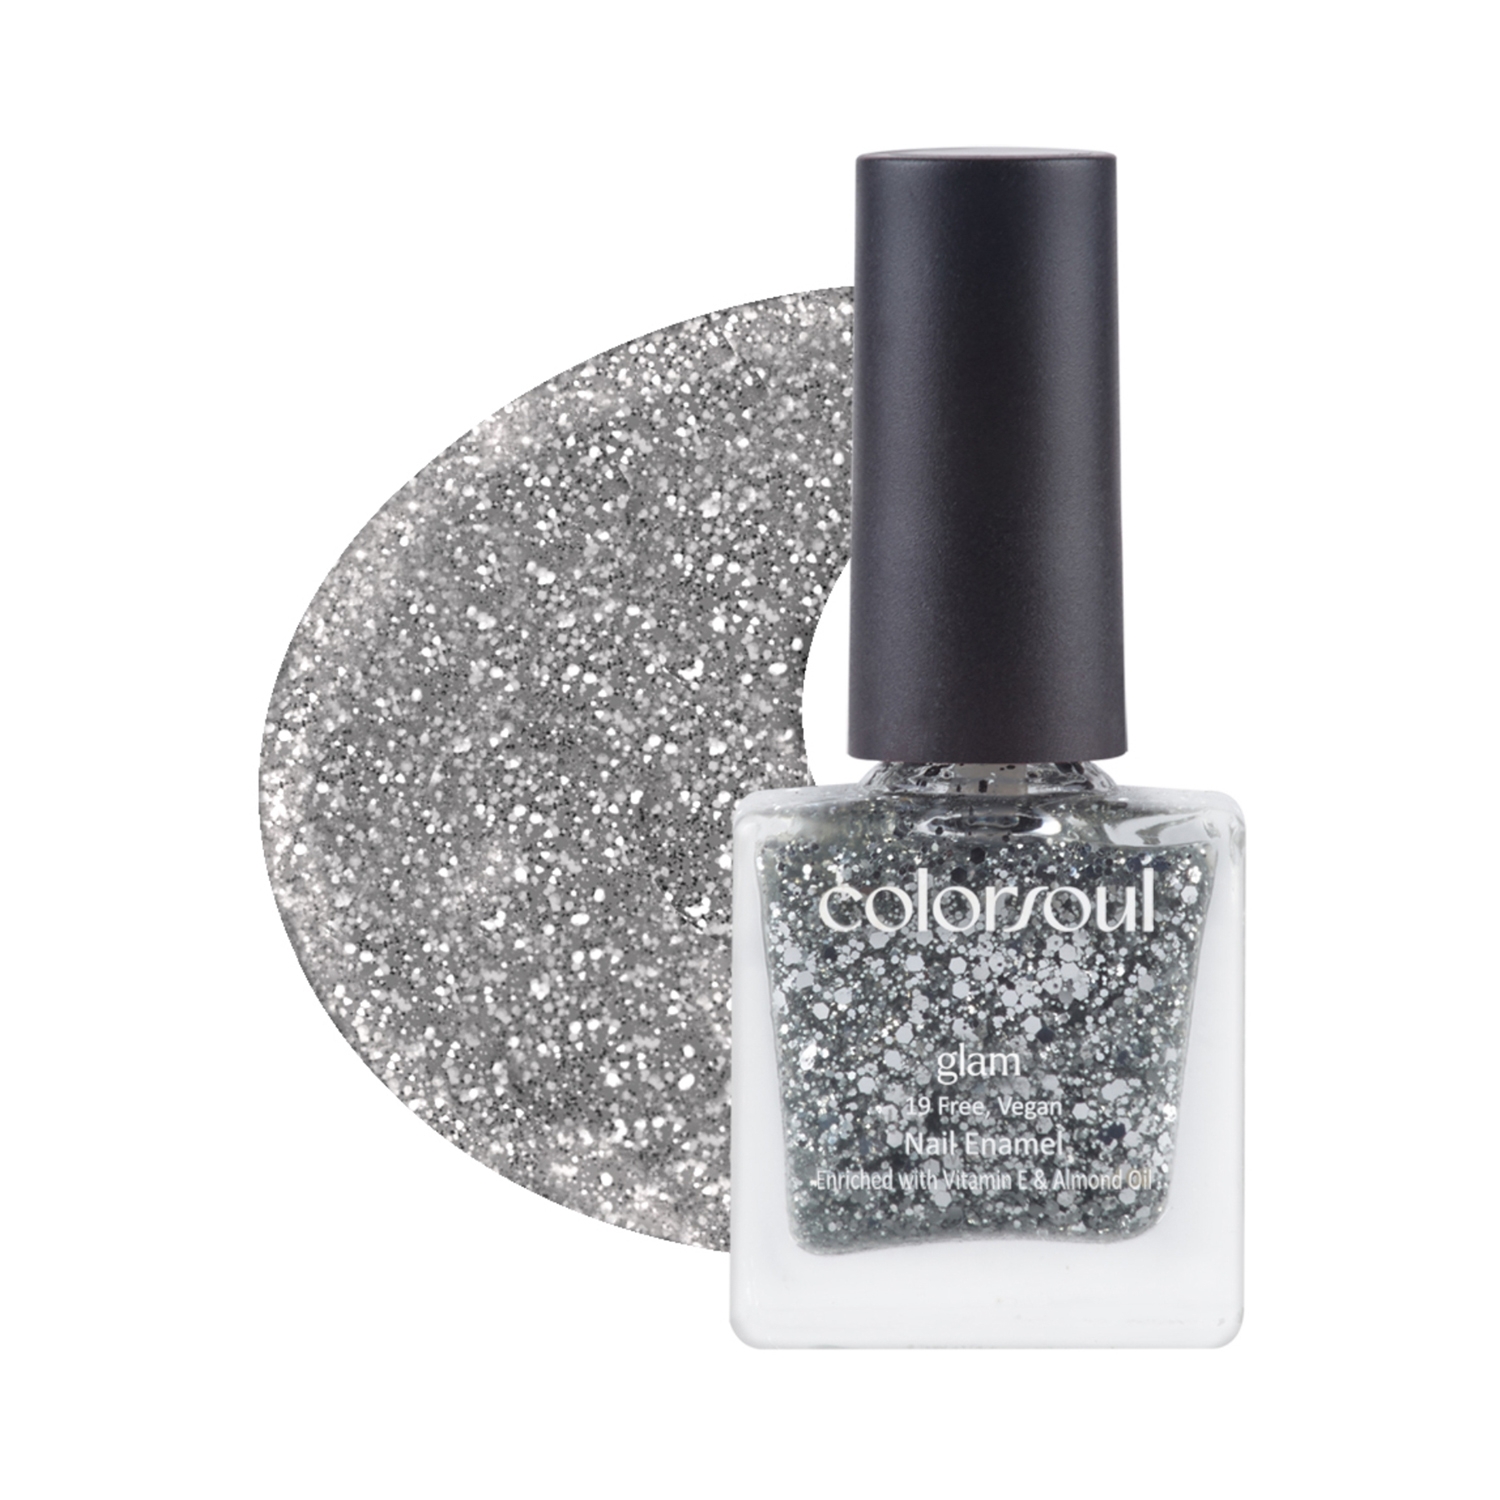 Colorsoul | Colorsoul Glam Nail Enamel - G10 Silver Sparkle (8ml)